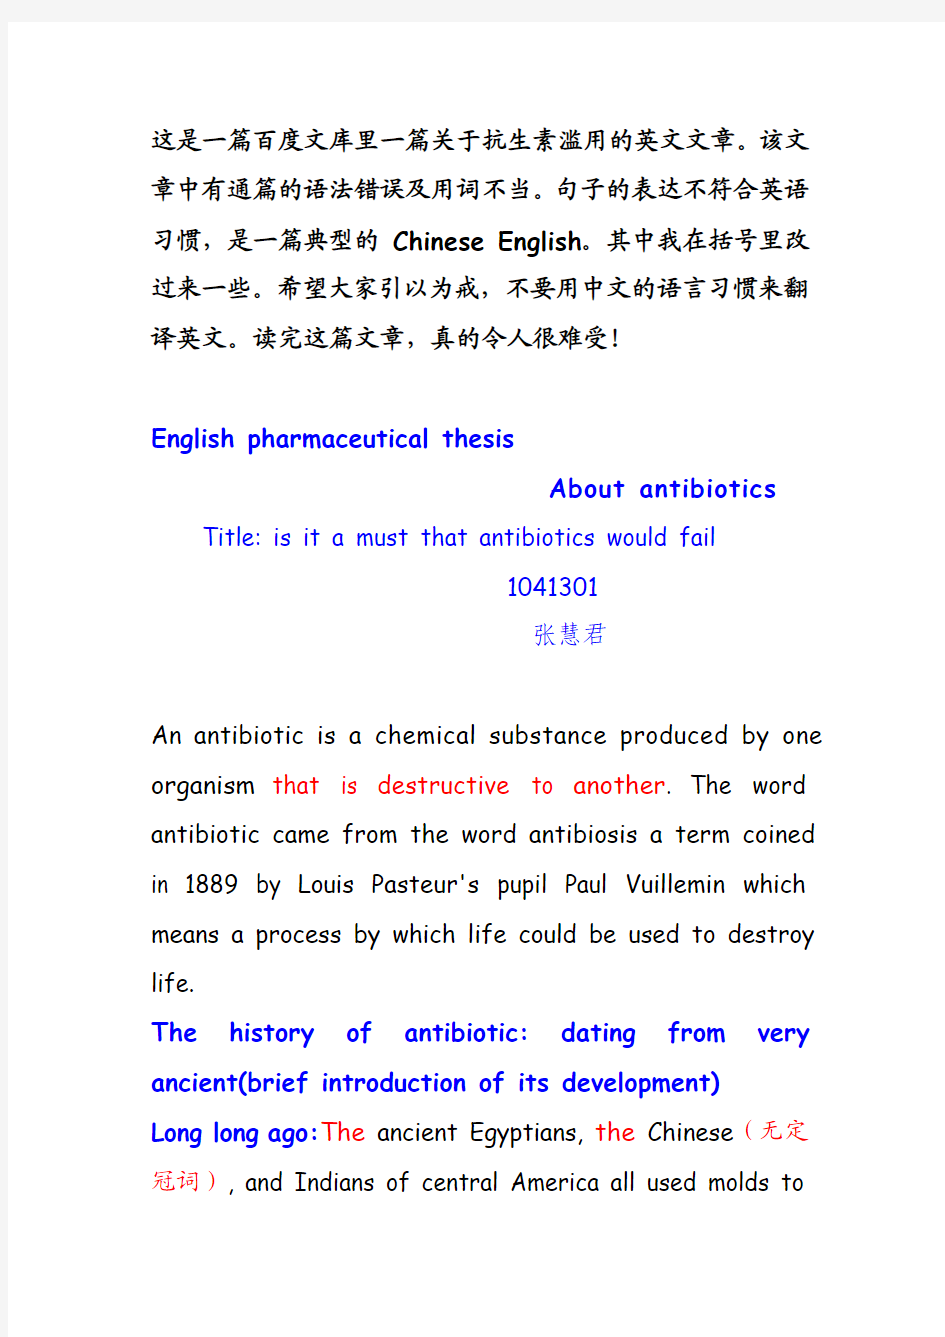 一篇典型中国式英语--抗生素滥用论文的修改稿